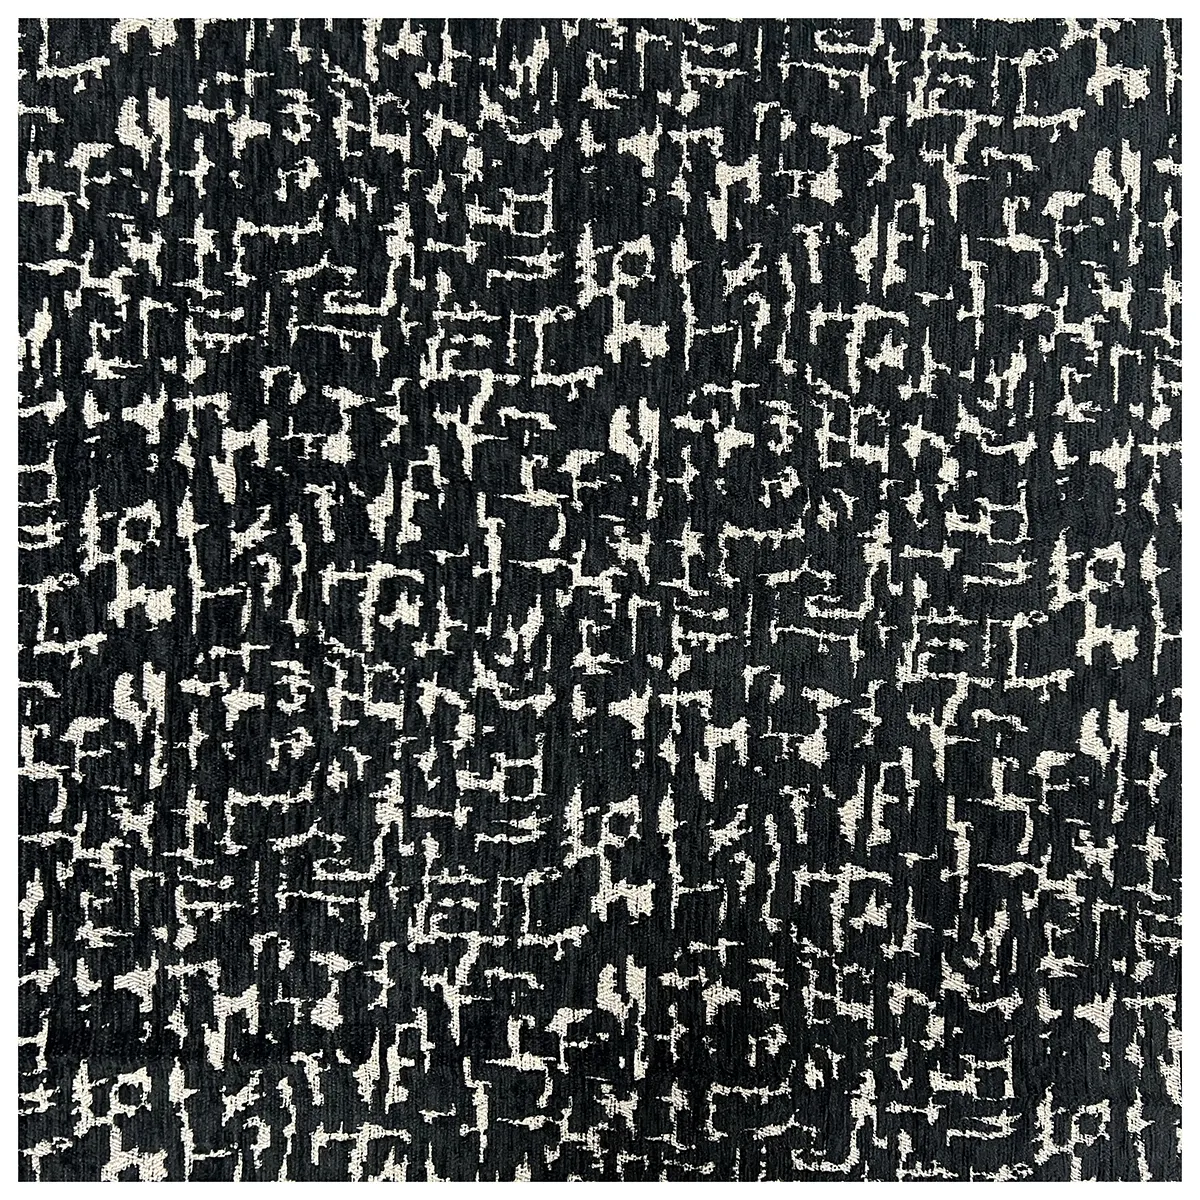 OEM filato fil vie in poliestere in maglia stile sud-est asiatico micro ciniglia divano tessuto per sedia